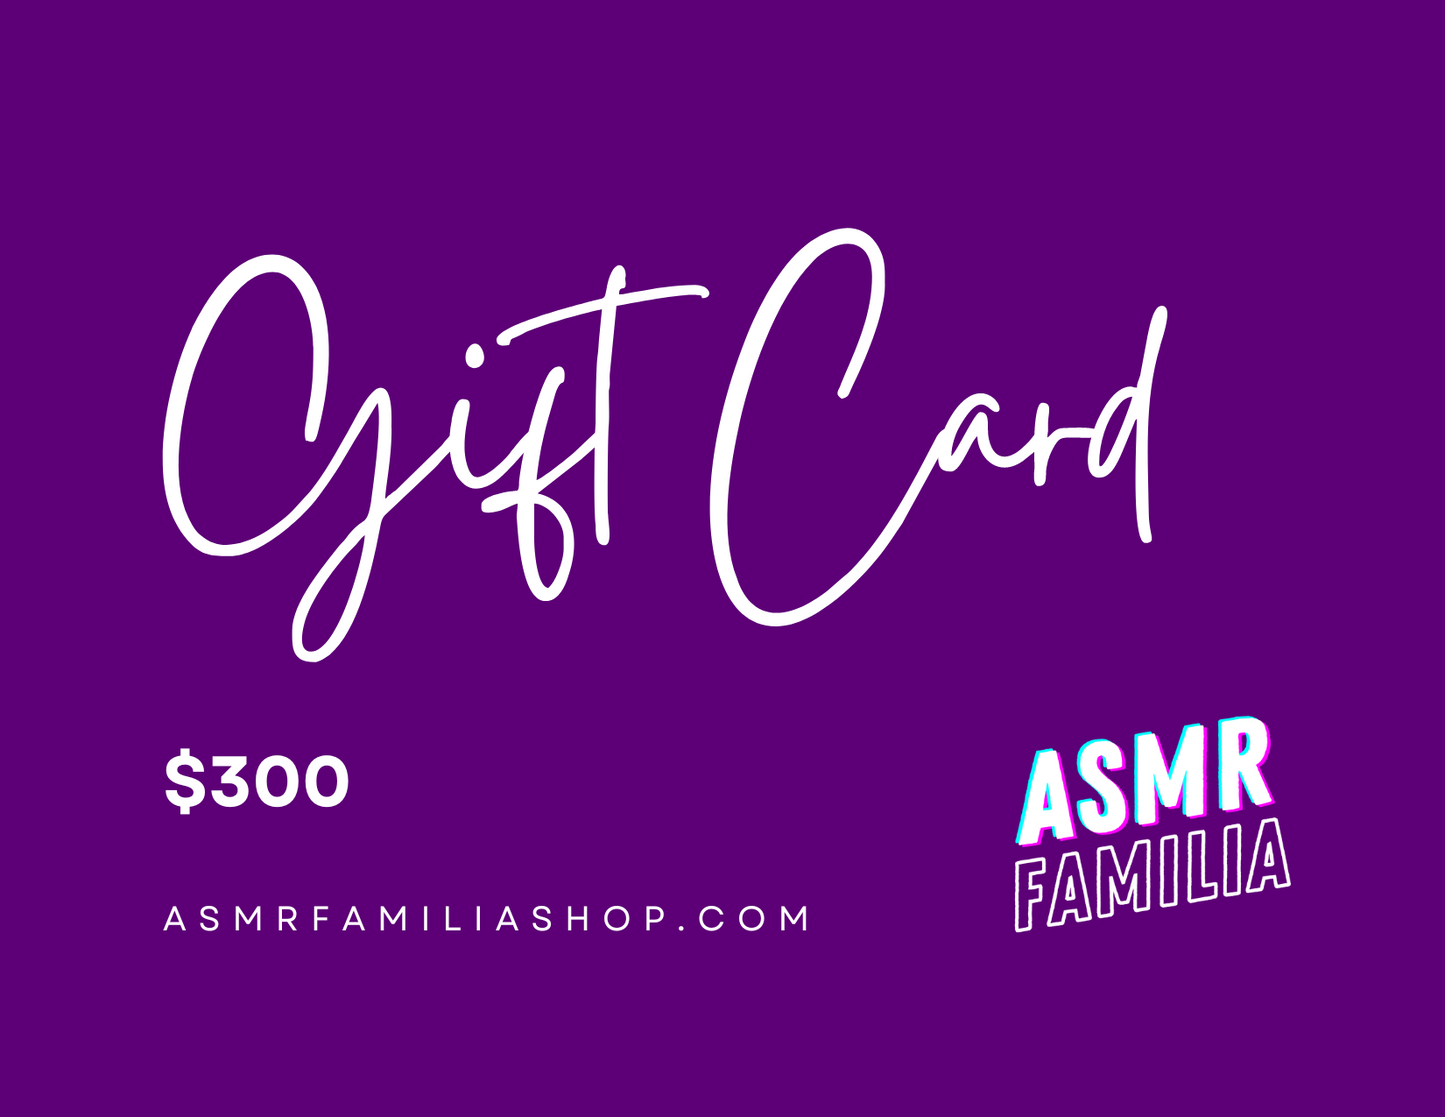 ASMR FAMILIA Gift Card